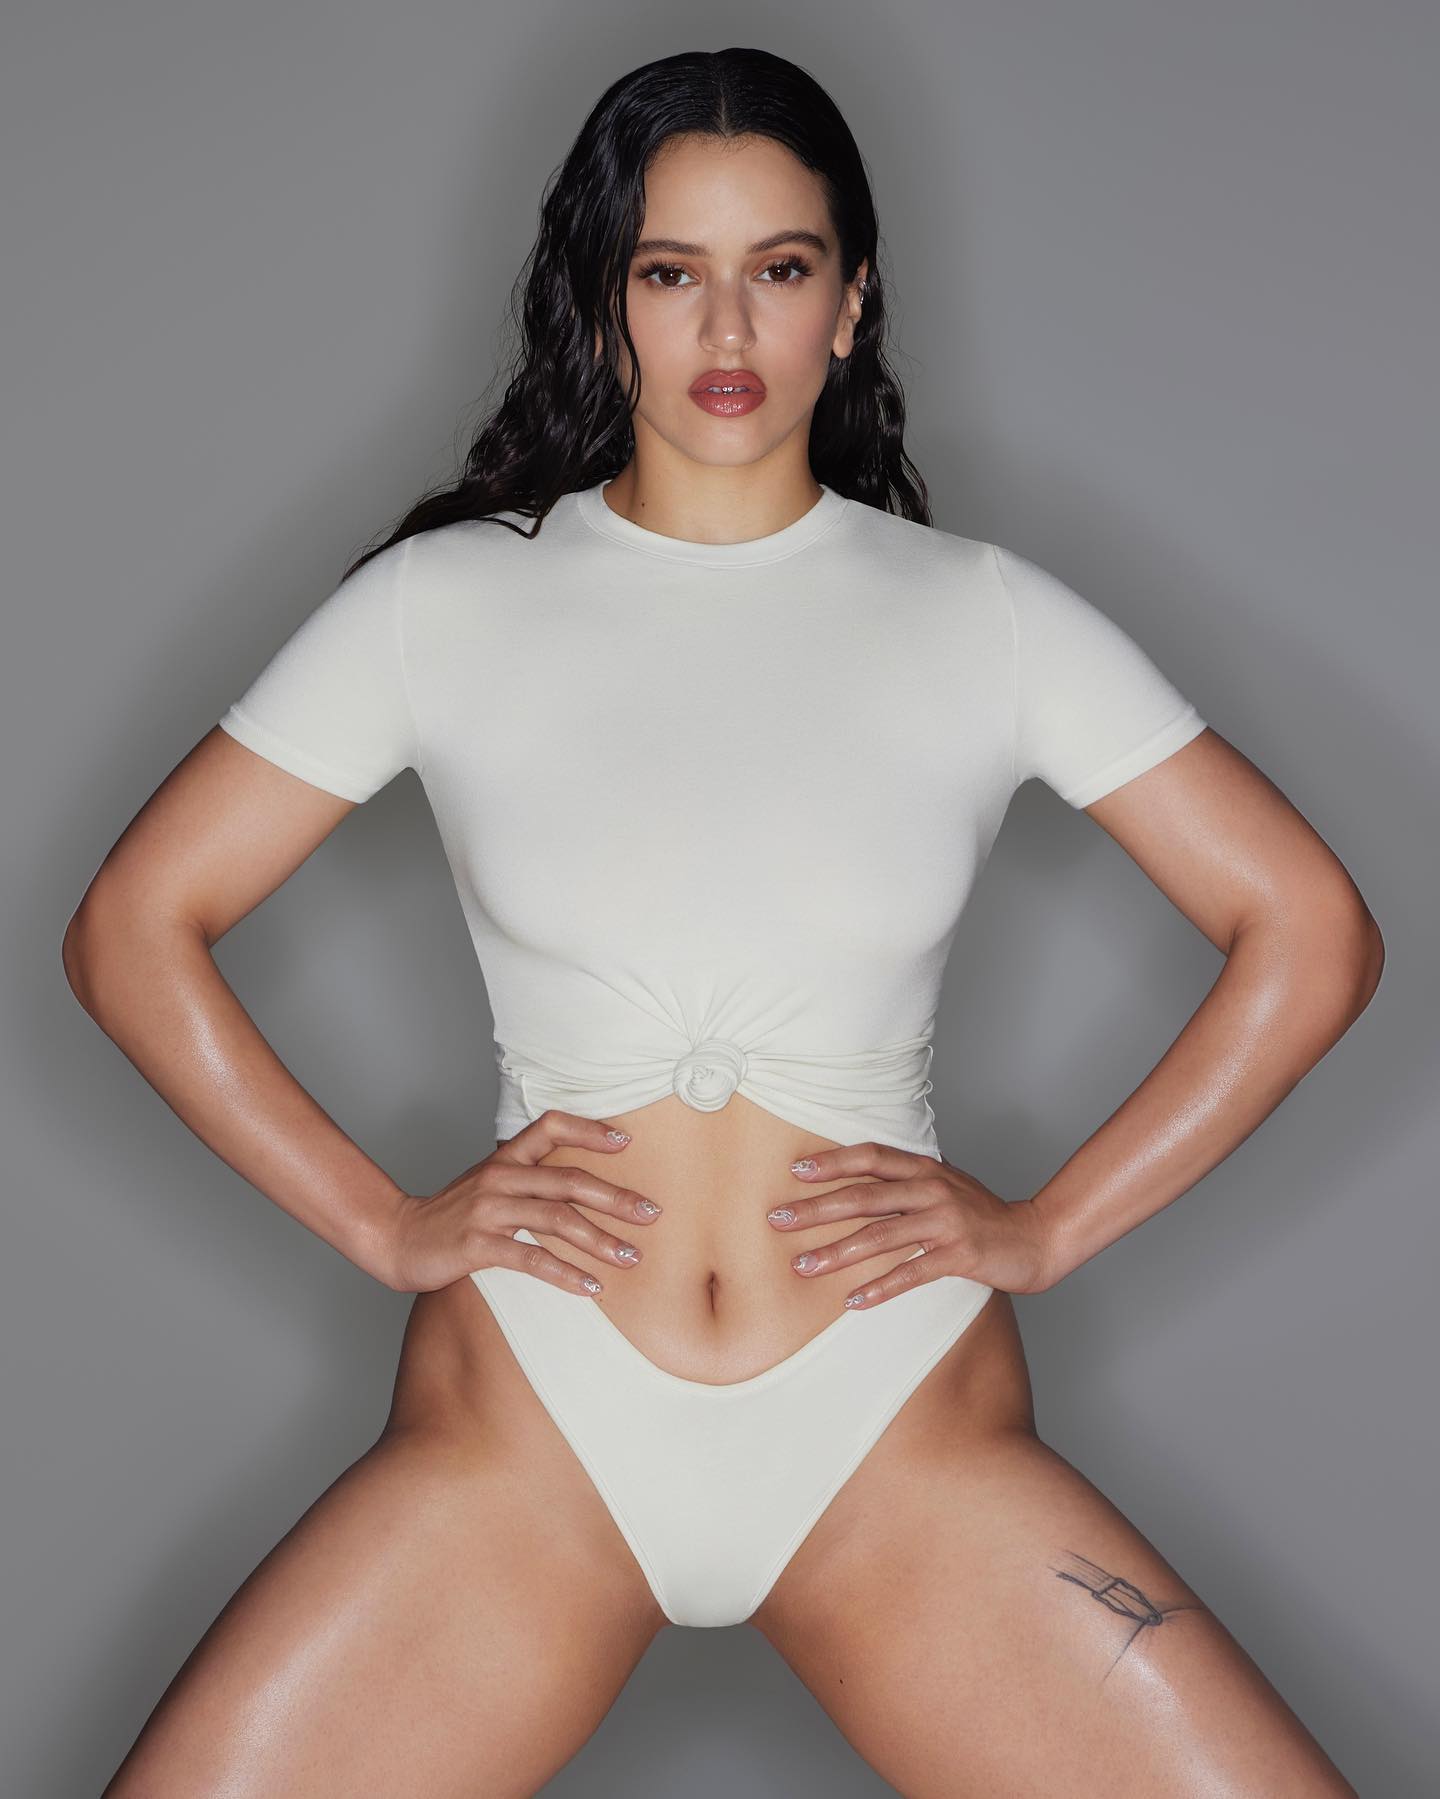 Kim Kardashian eligió a Rosalía para el lanzamiento de su nueva colección de ropa interior